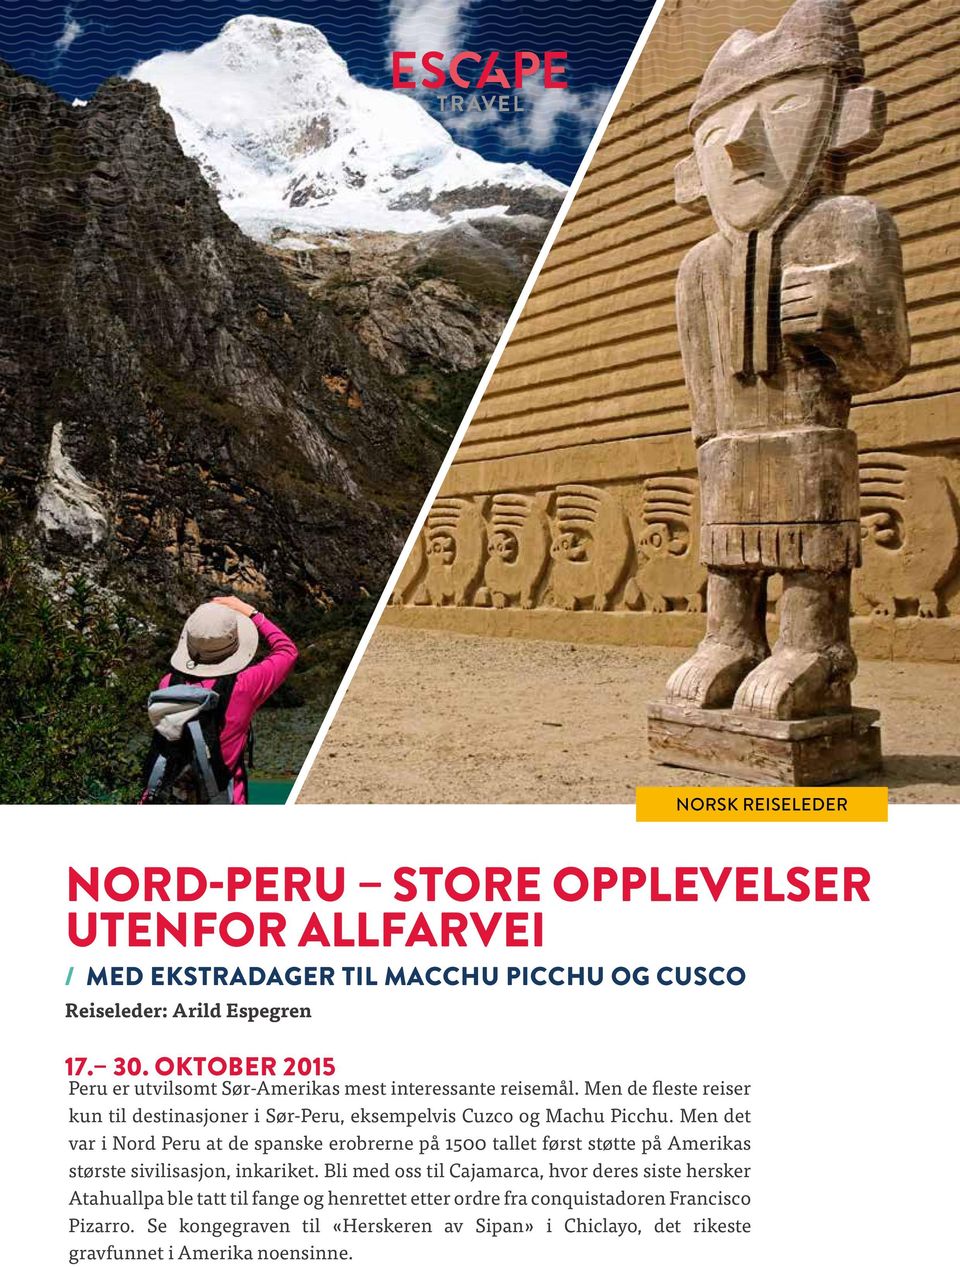 Men det var i Nord Peru at de spanske erobrerne på 1500 tallet først støtte på Amerikas største sivilisasjon, inkariket.